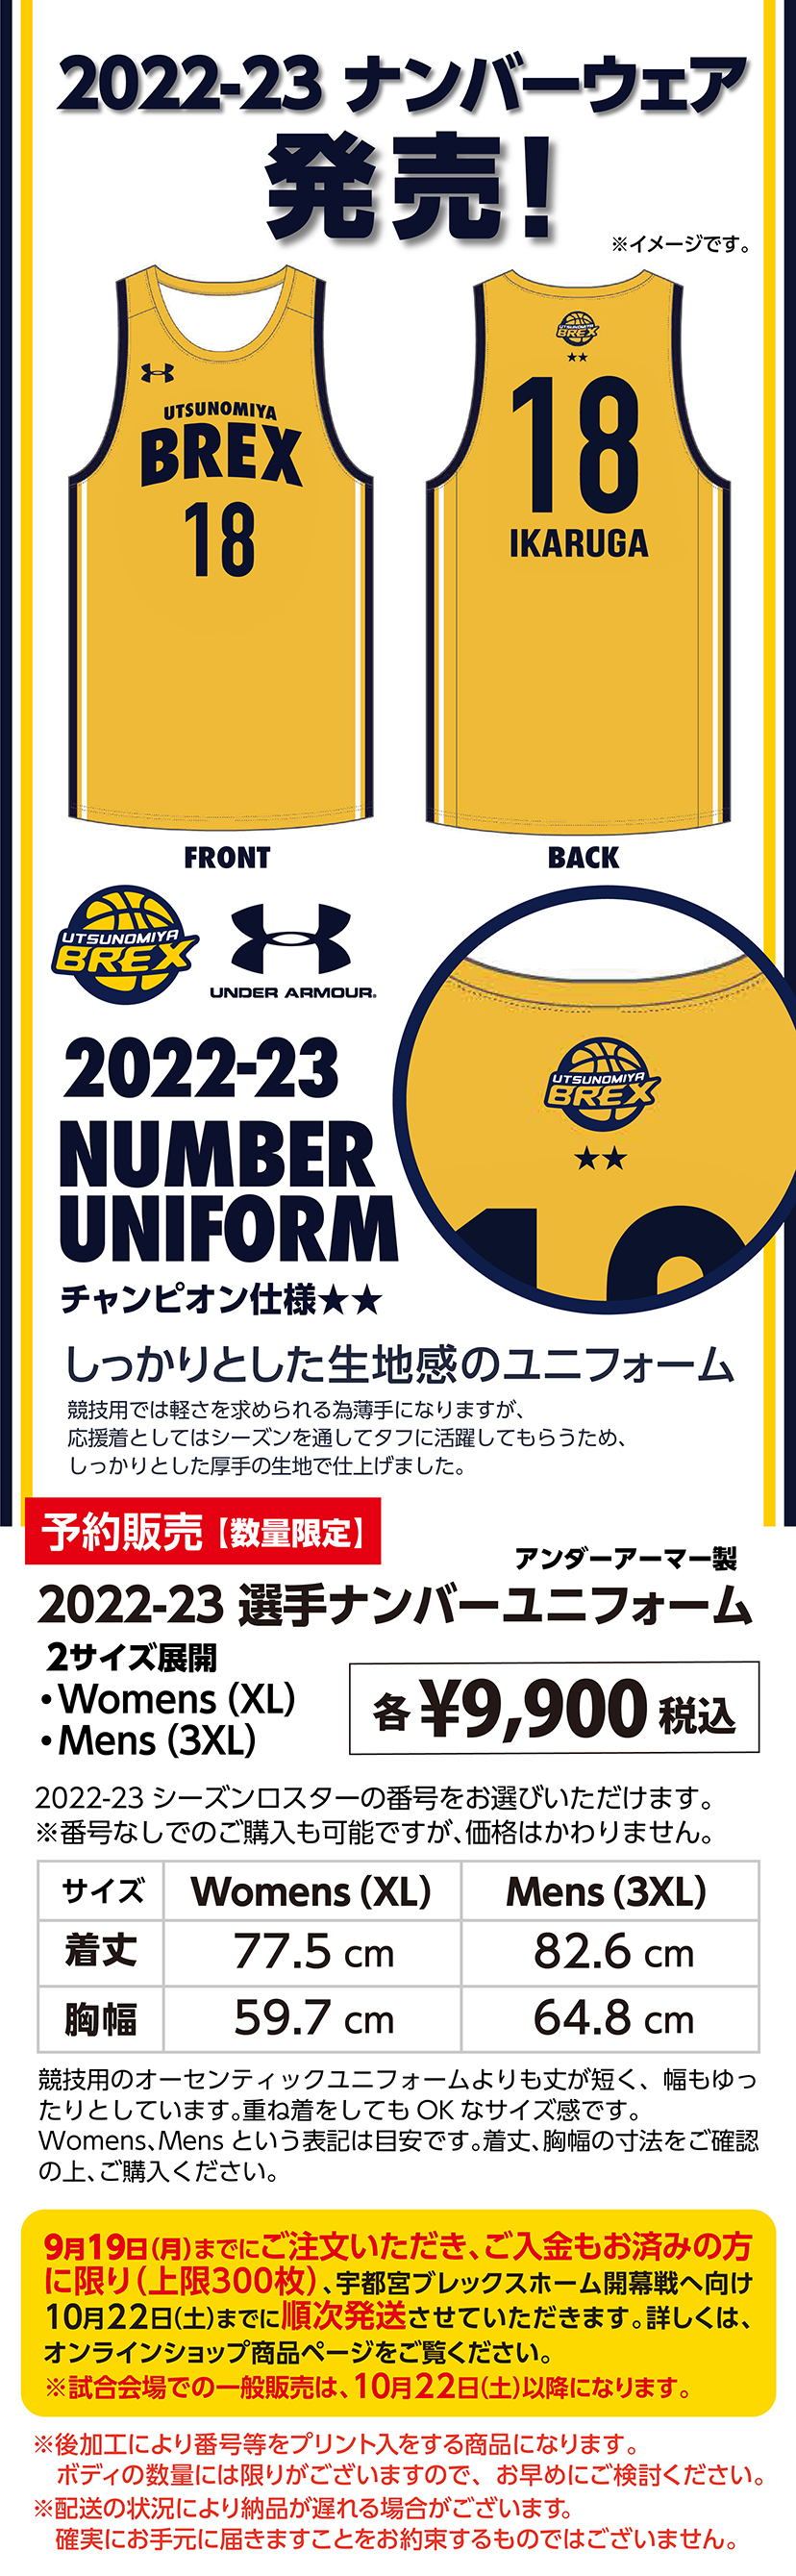 9/10(土)発売】2022-23 オーセンティックユニフォーム・選手ナンバー 